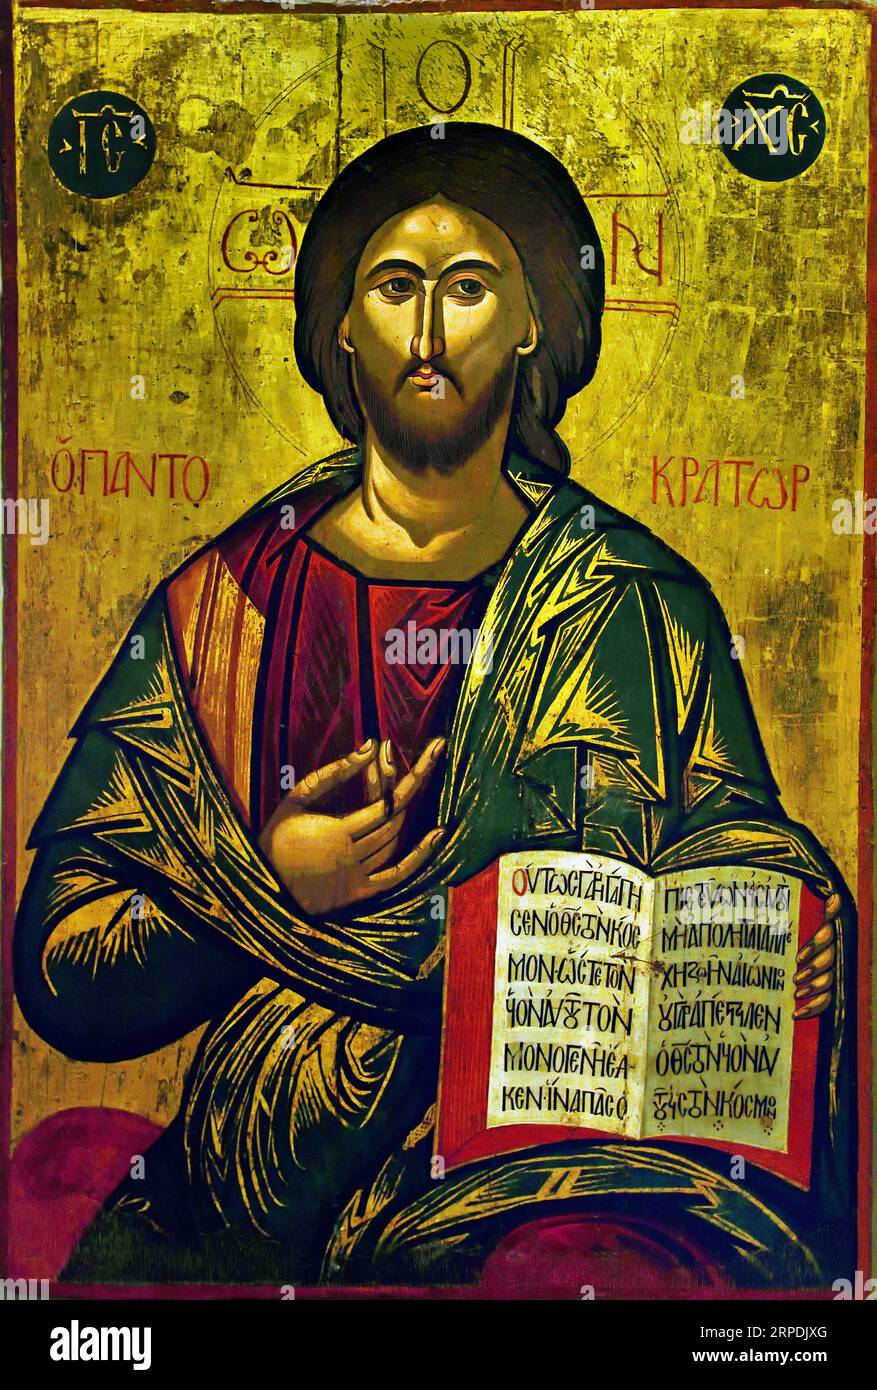 Symbol von Christ Pantokrator. Es wird dem Maler Michael Damaskenos zugeschrieben. Zweite Hälfte des 16 Jahrhunderts Athen Griechenland Byzantinisches Museum Orthodoxe Kirche Griechisch ( icon ) Stockfoto